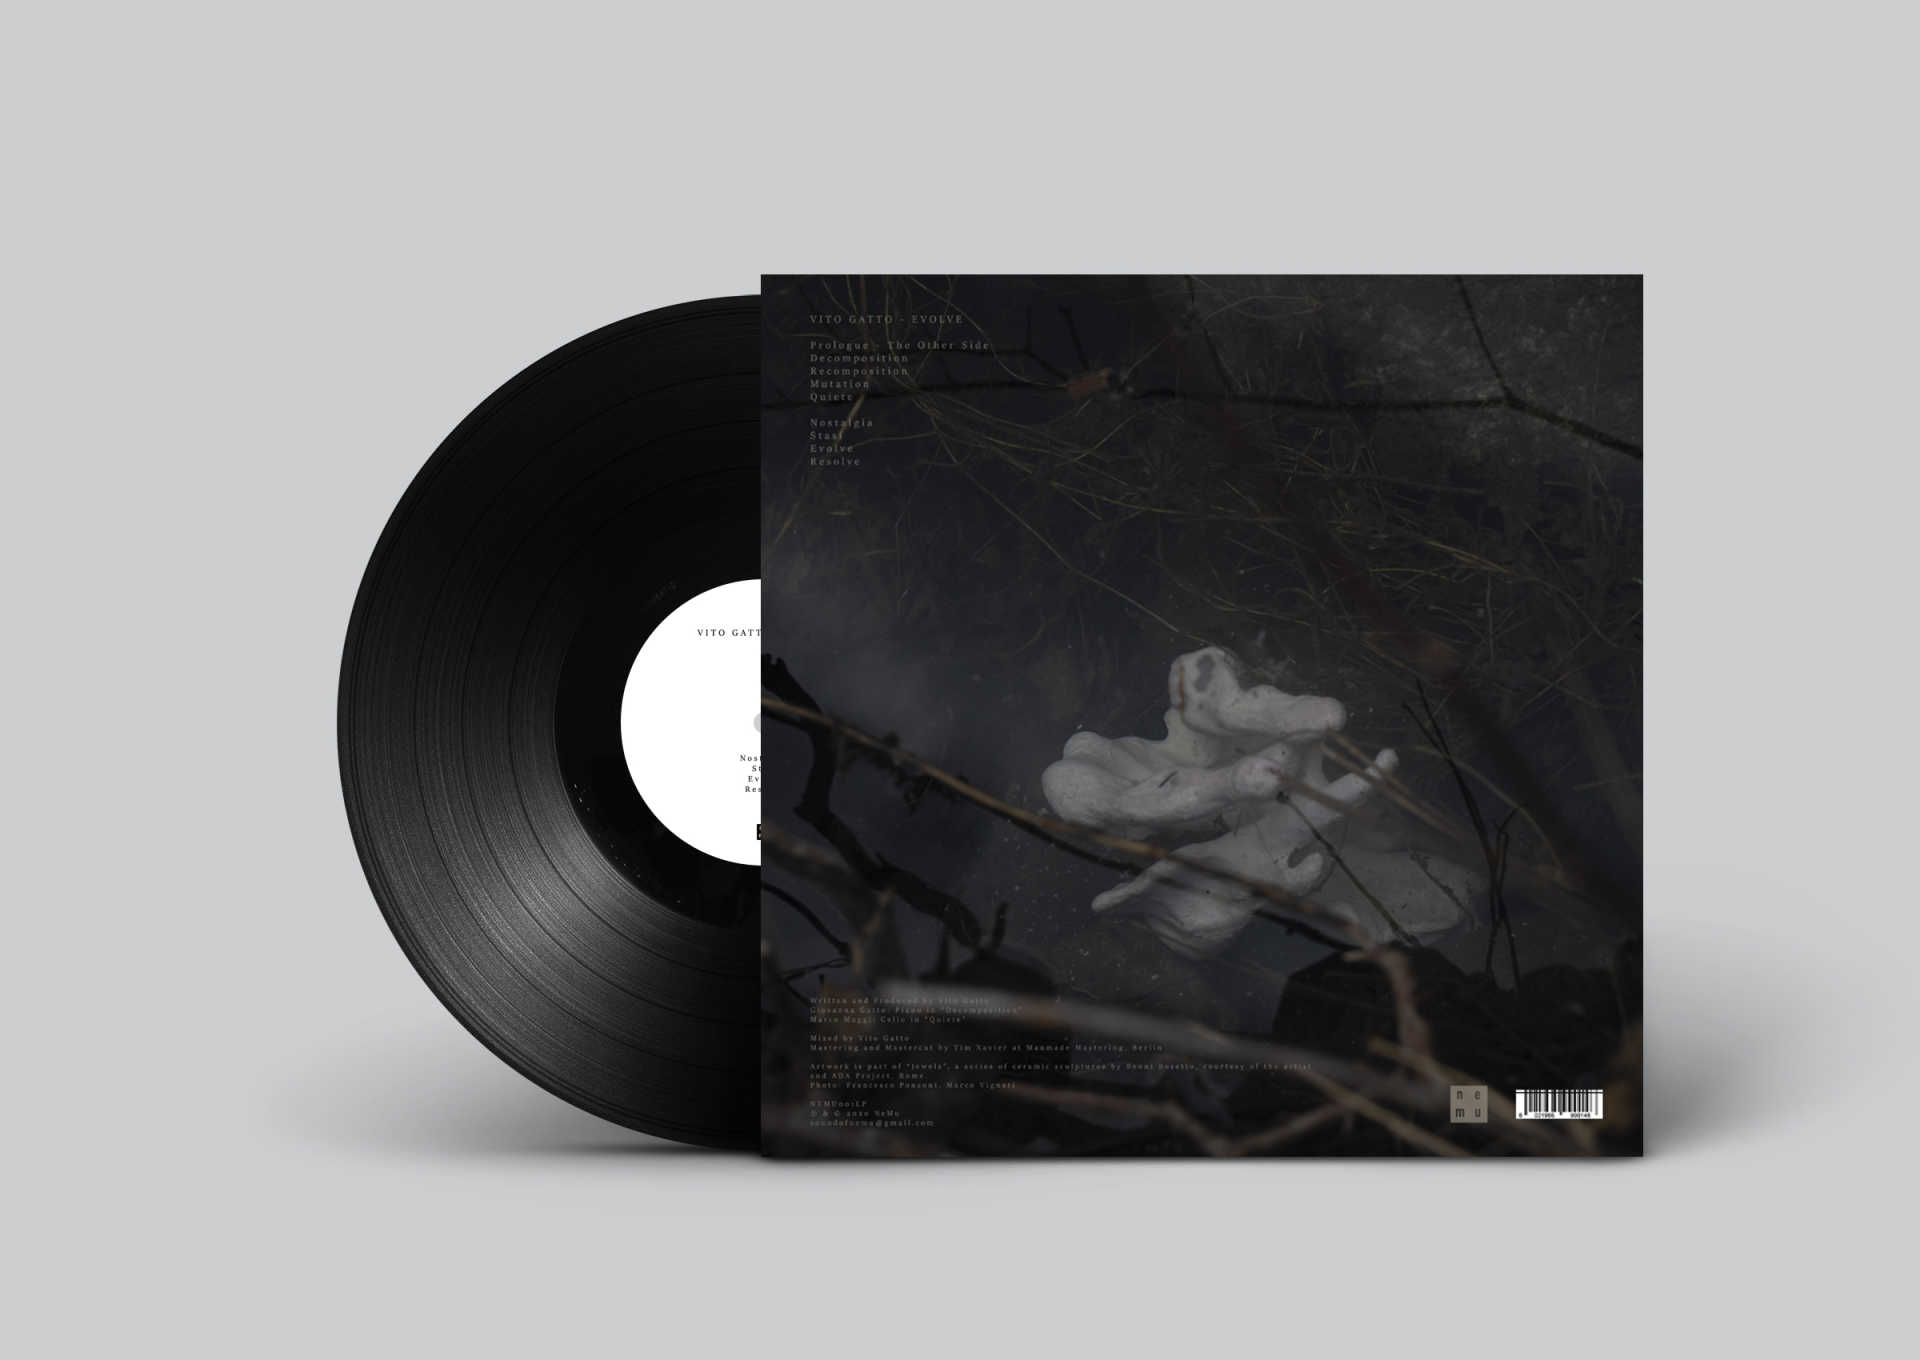 The vinyl cut of Evolve, by Vito Gatto